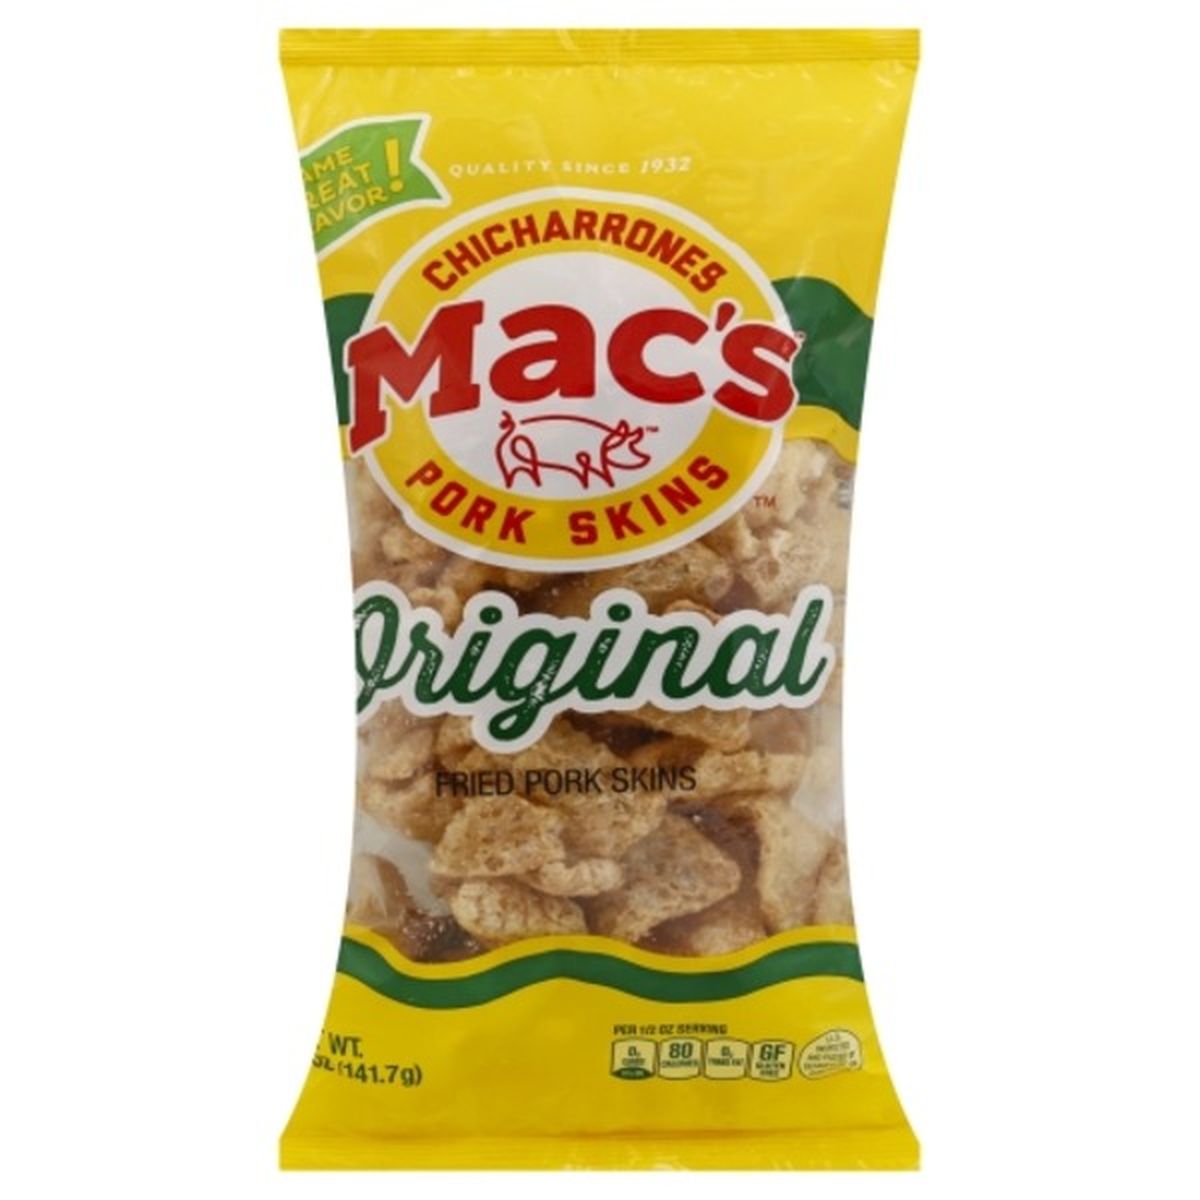 Calories in Macs Pork Skins, Fried, Original